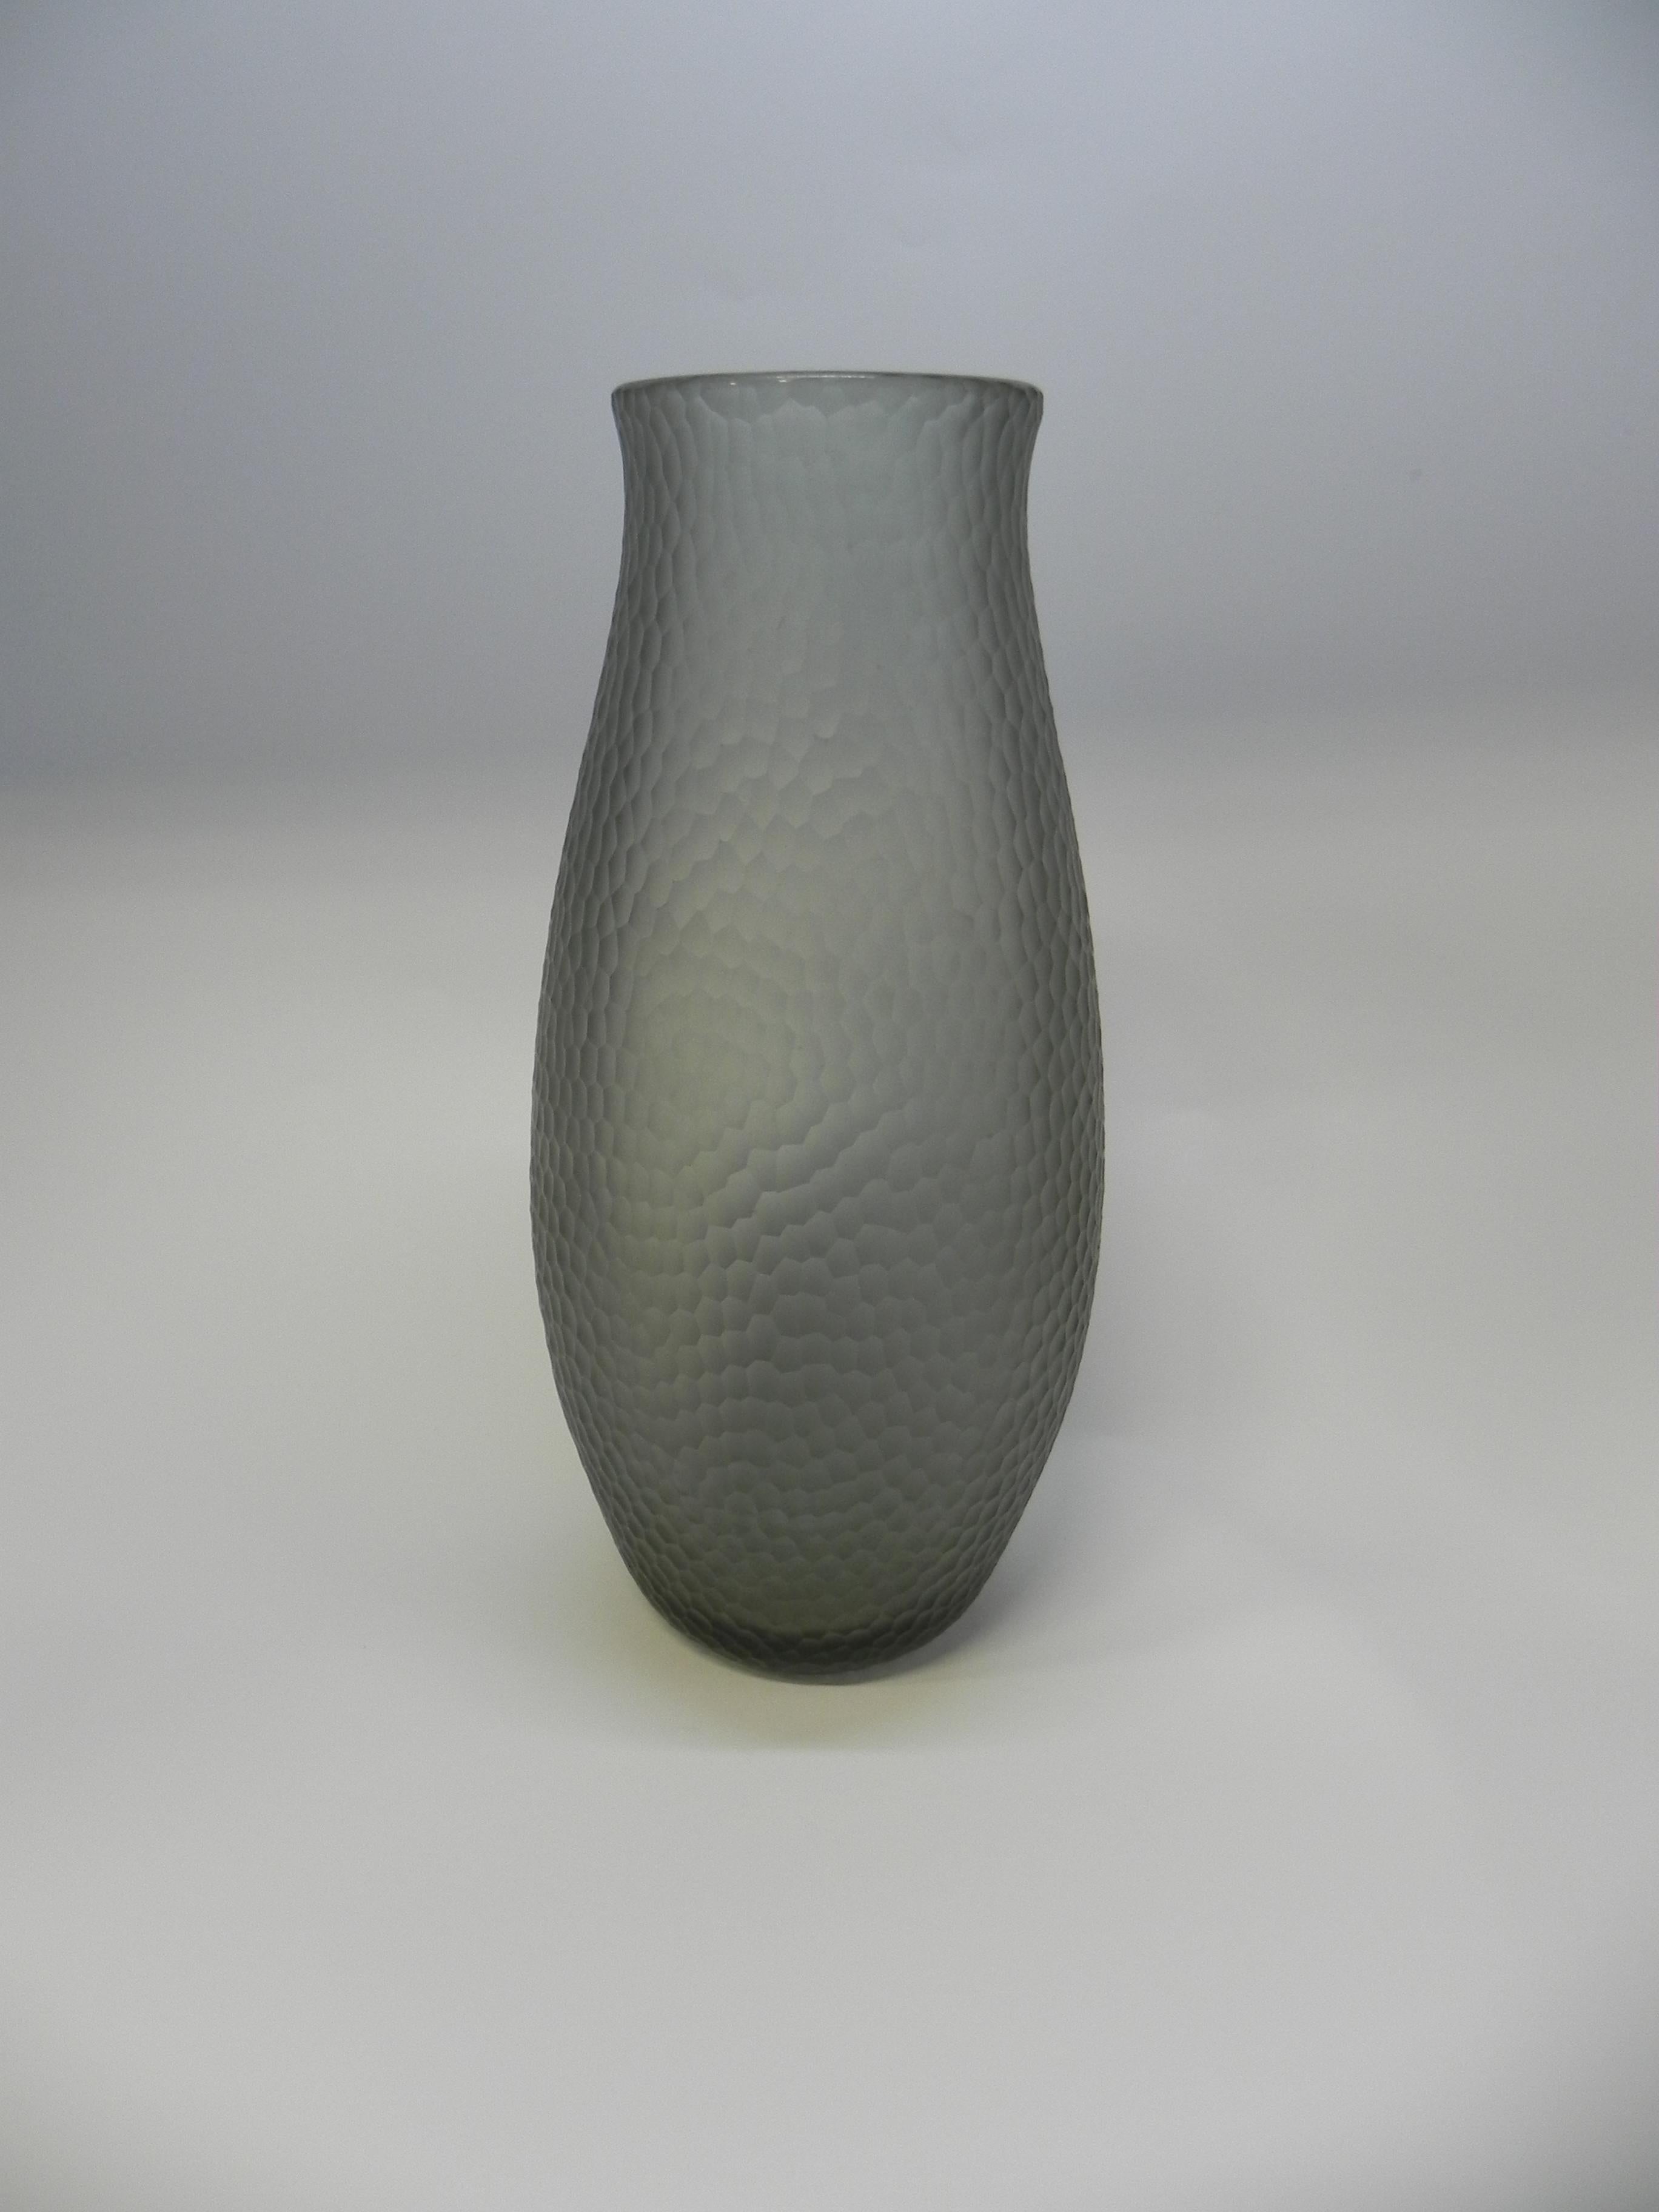 Big Carlo Scarpa Venini Murano glass vase 